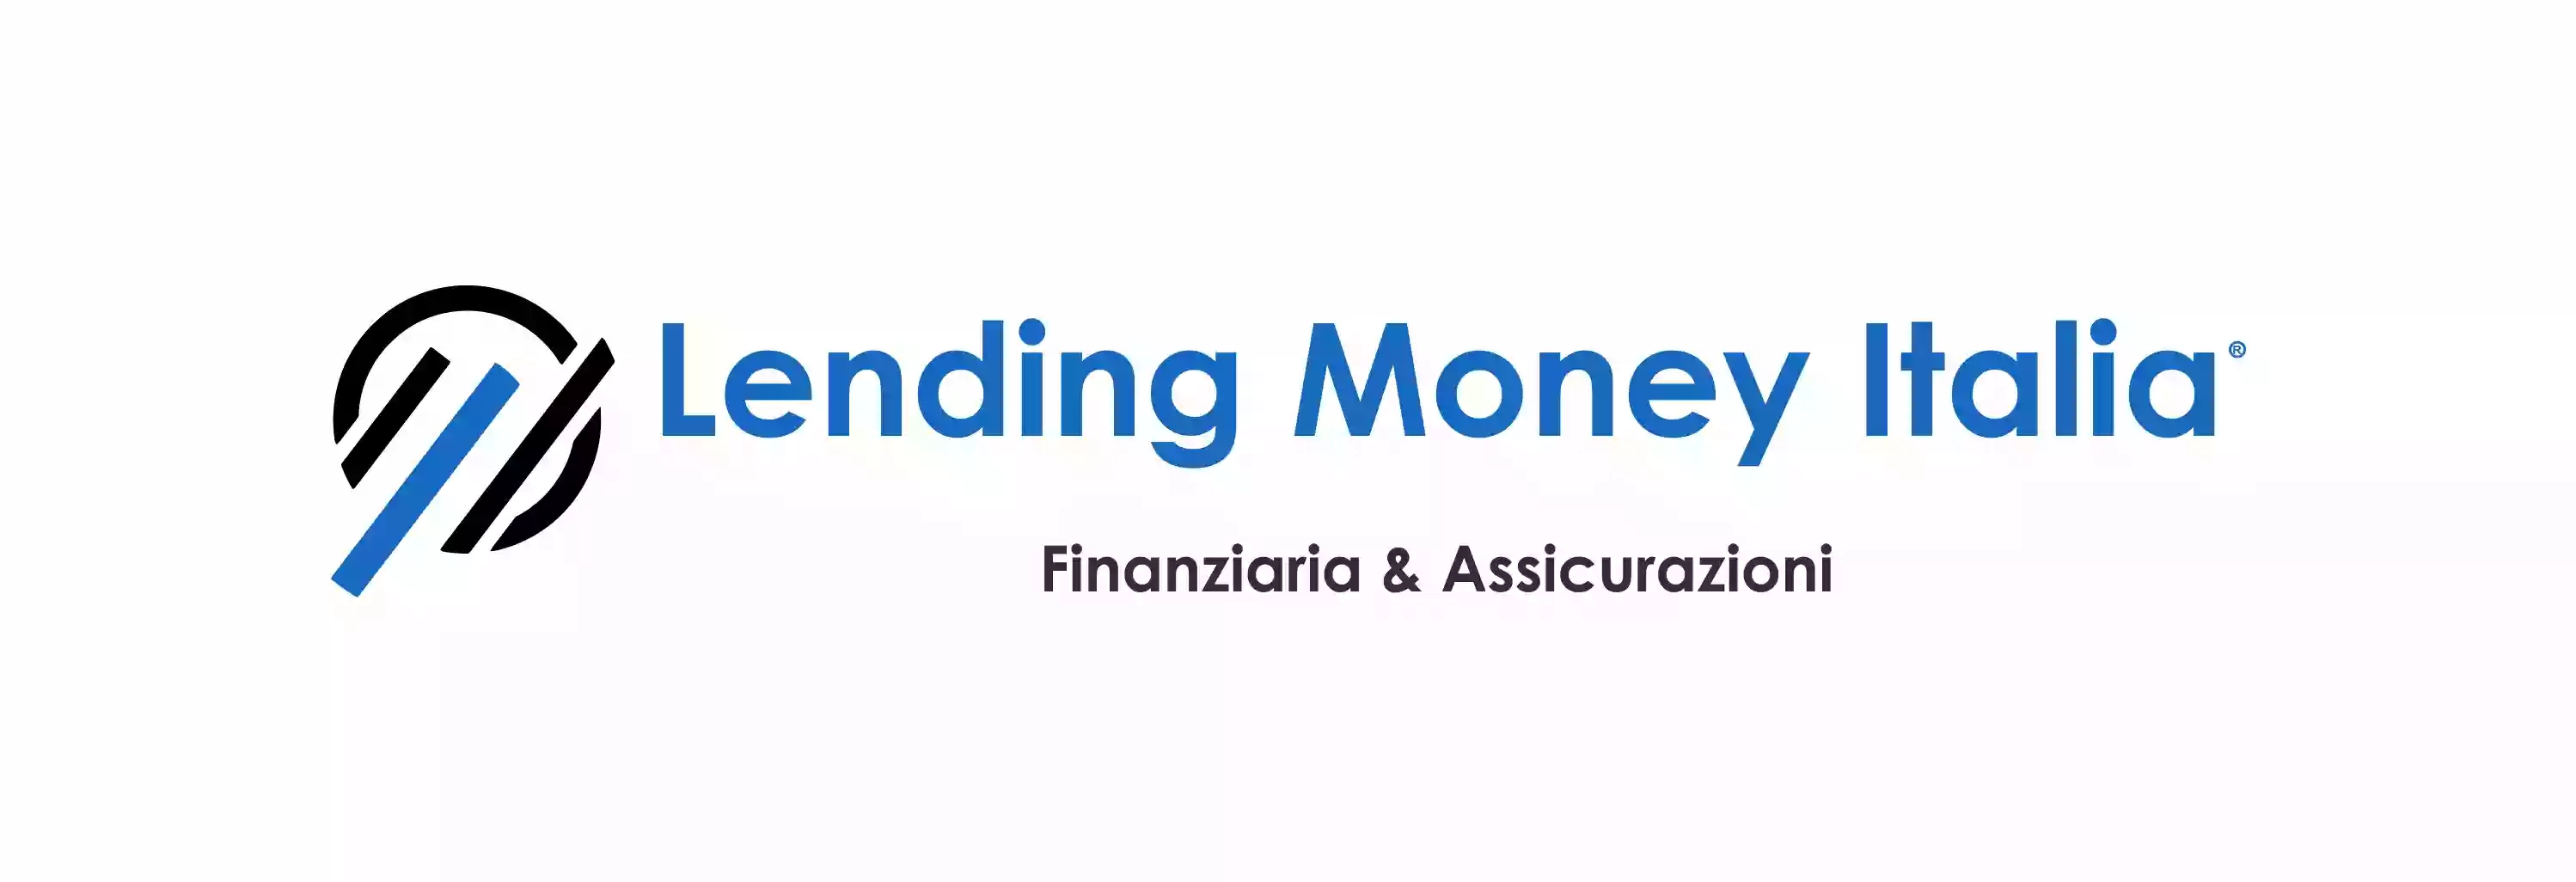 Lending Money Italia